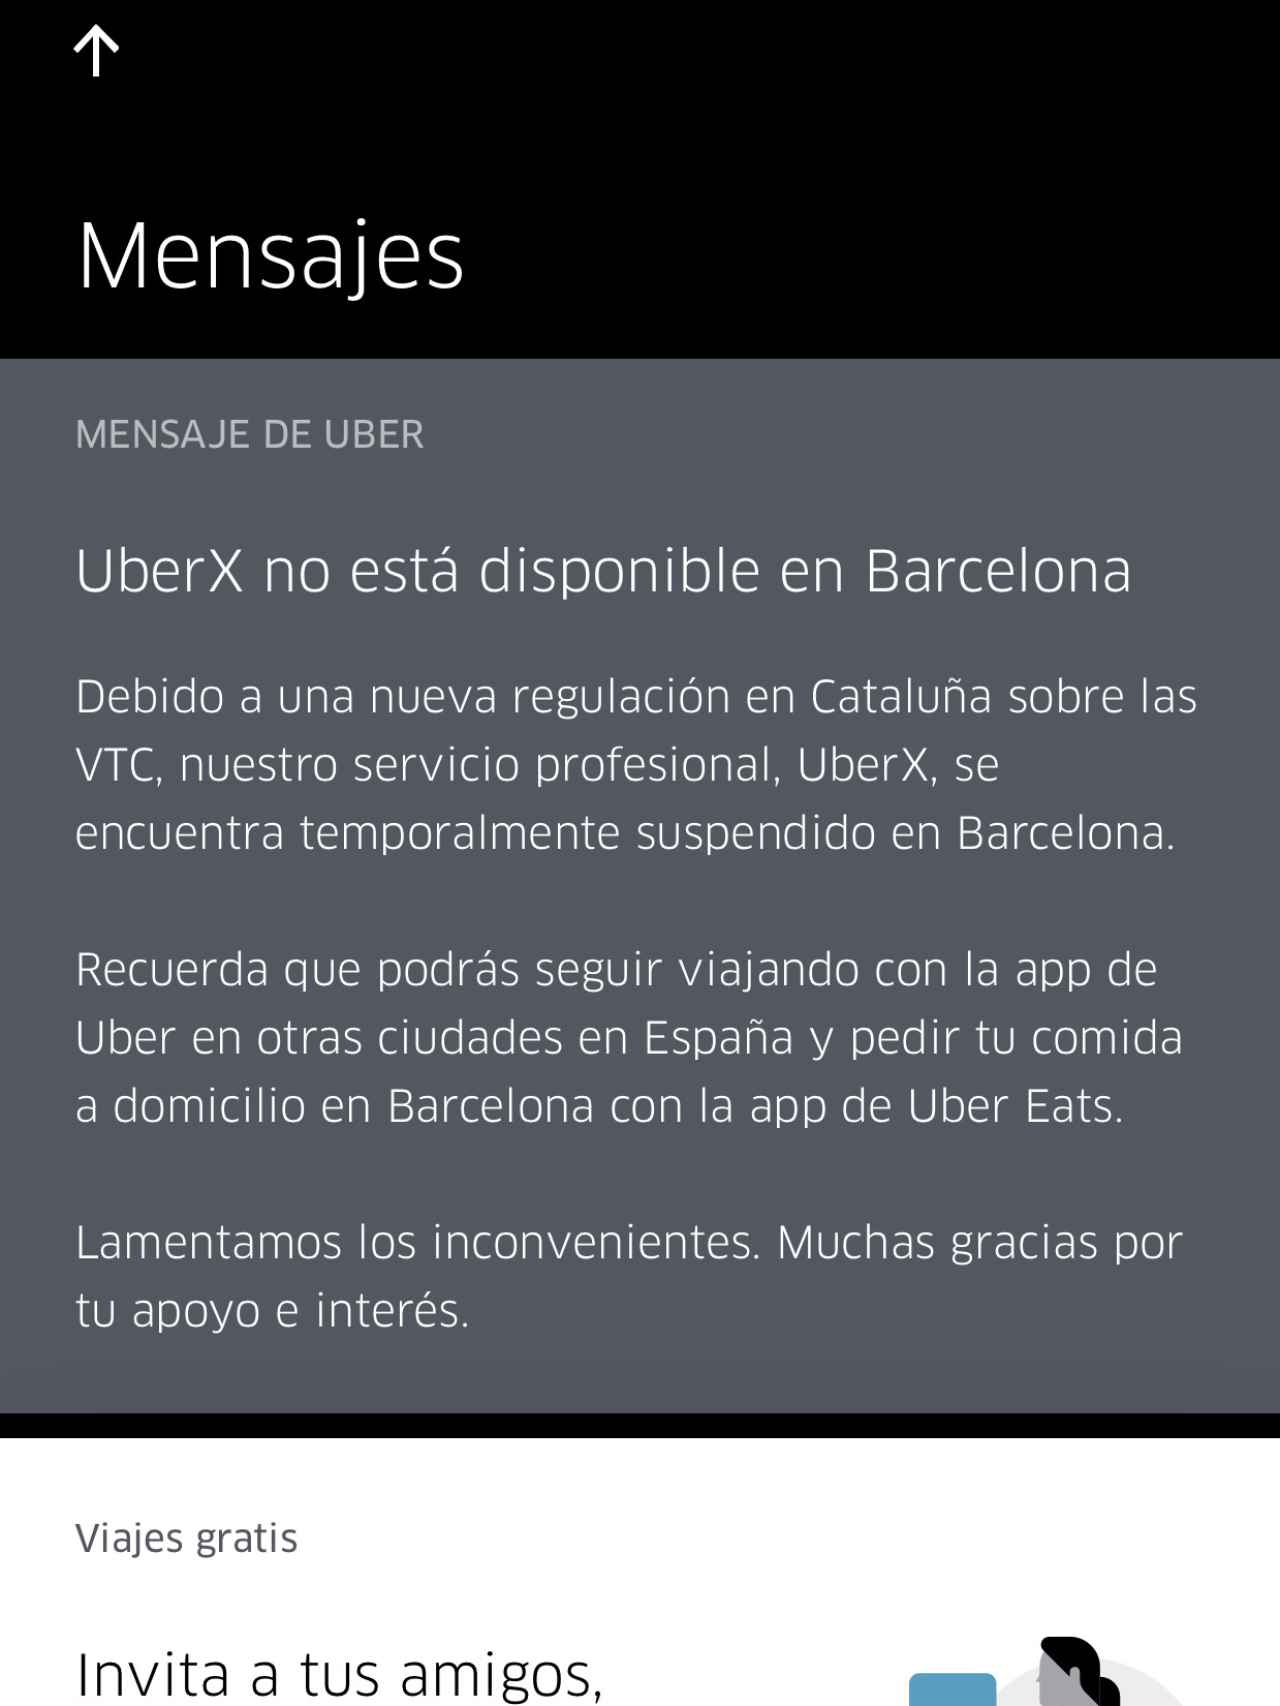 Intentando contratar Uber en Barcelona.